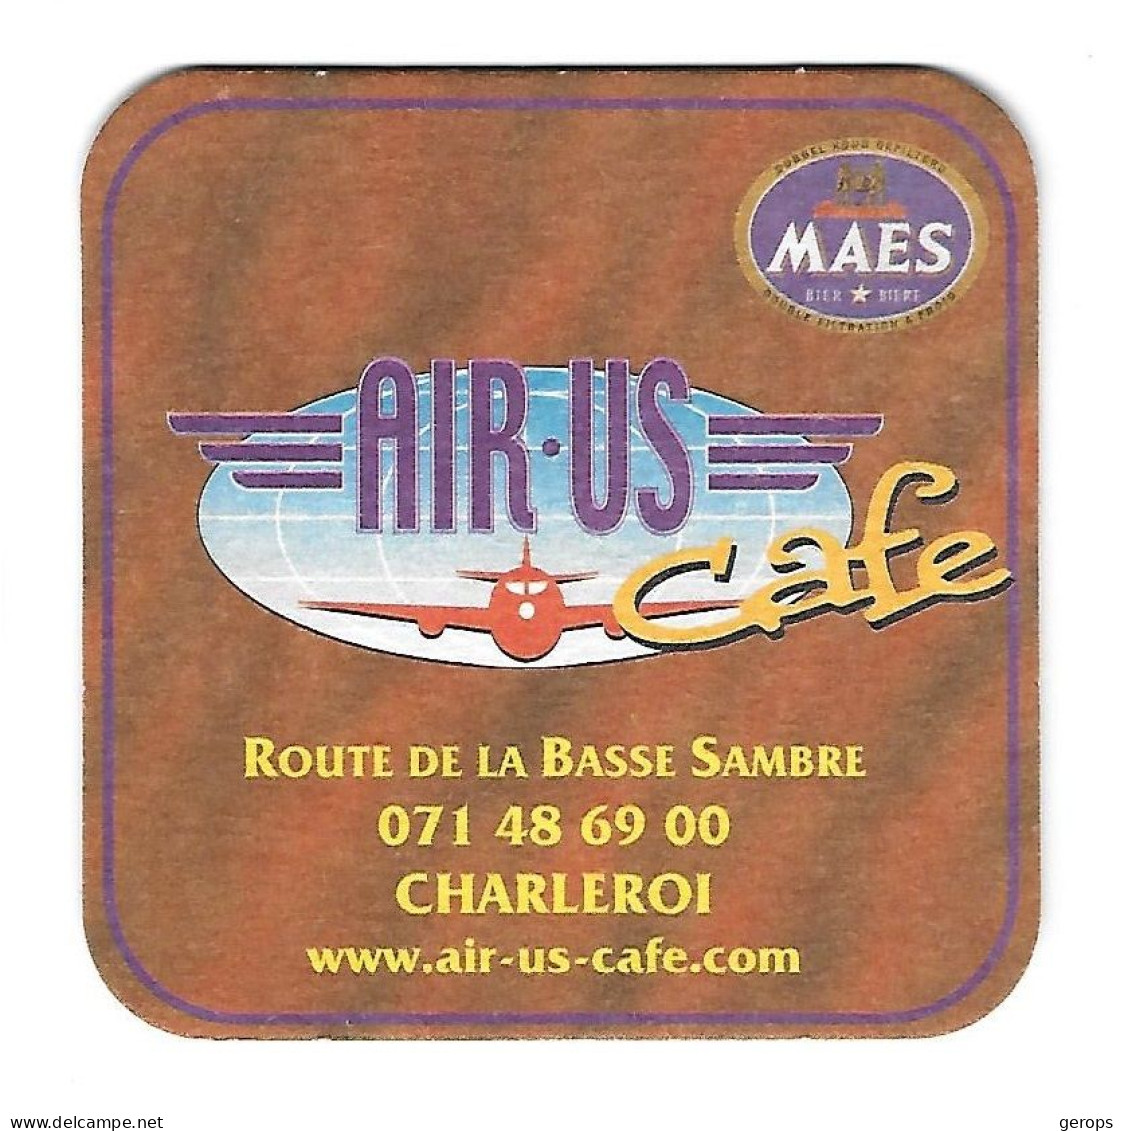 140a Brij. Maes Waarloos Air-Bus Cafe Charleroi - Beer Mats